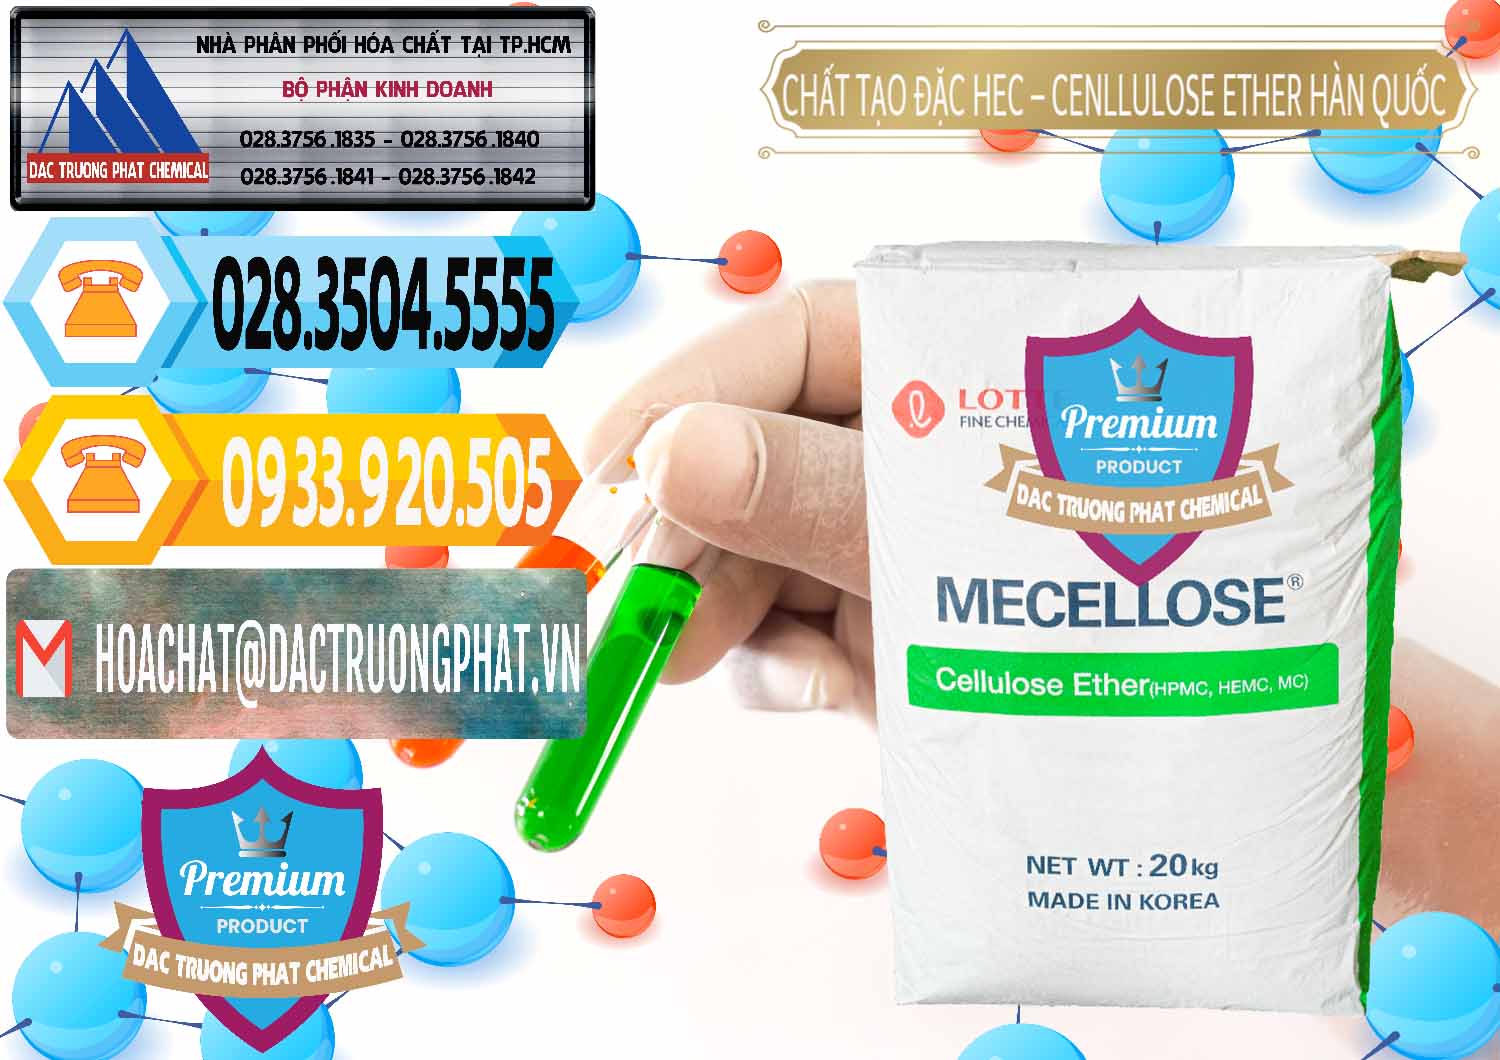 Nơi chuyên phân phối và bán Chất Tạo Đặc Hec Mecellose – Cenllulose Ether Lotte Hàn Quốc Korea - 0050 - Đơn vị chuyên cung cấp _ nhập khẩu hóa chất tại TP.HCM - hoachattayrua.net